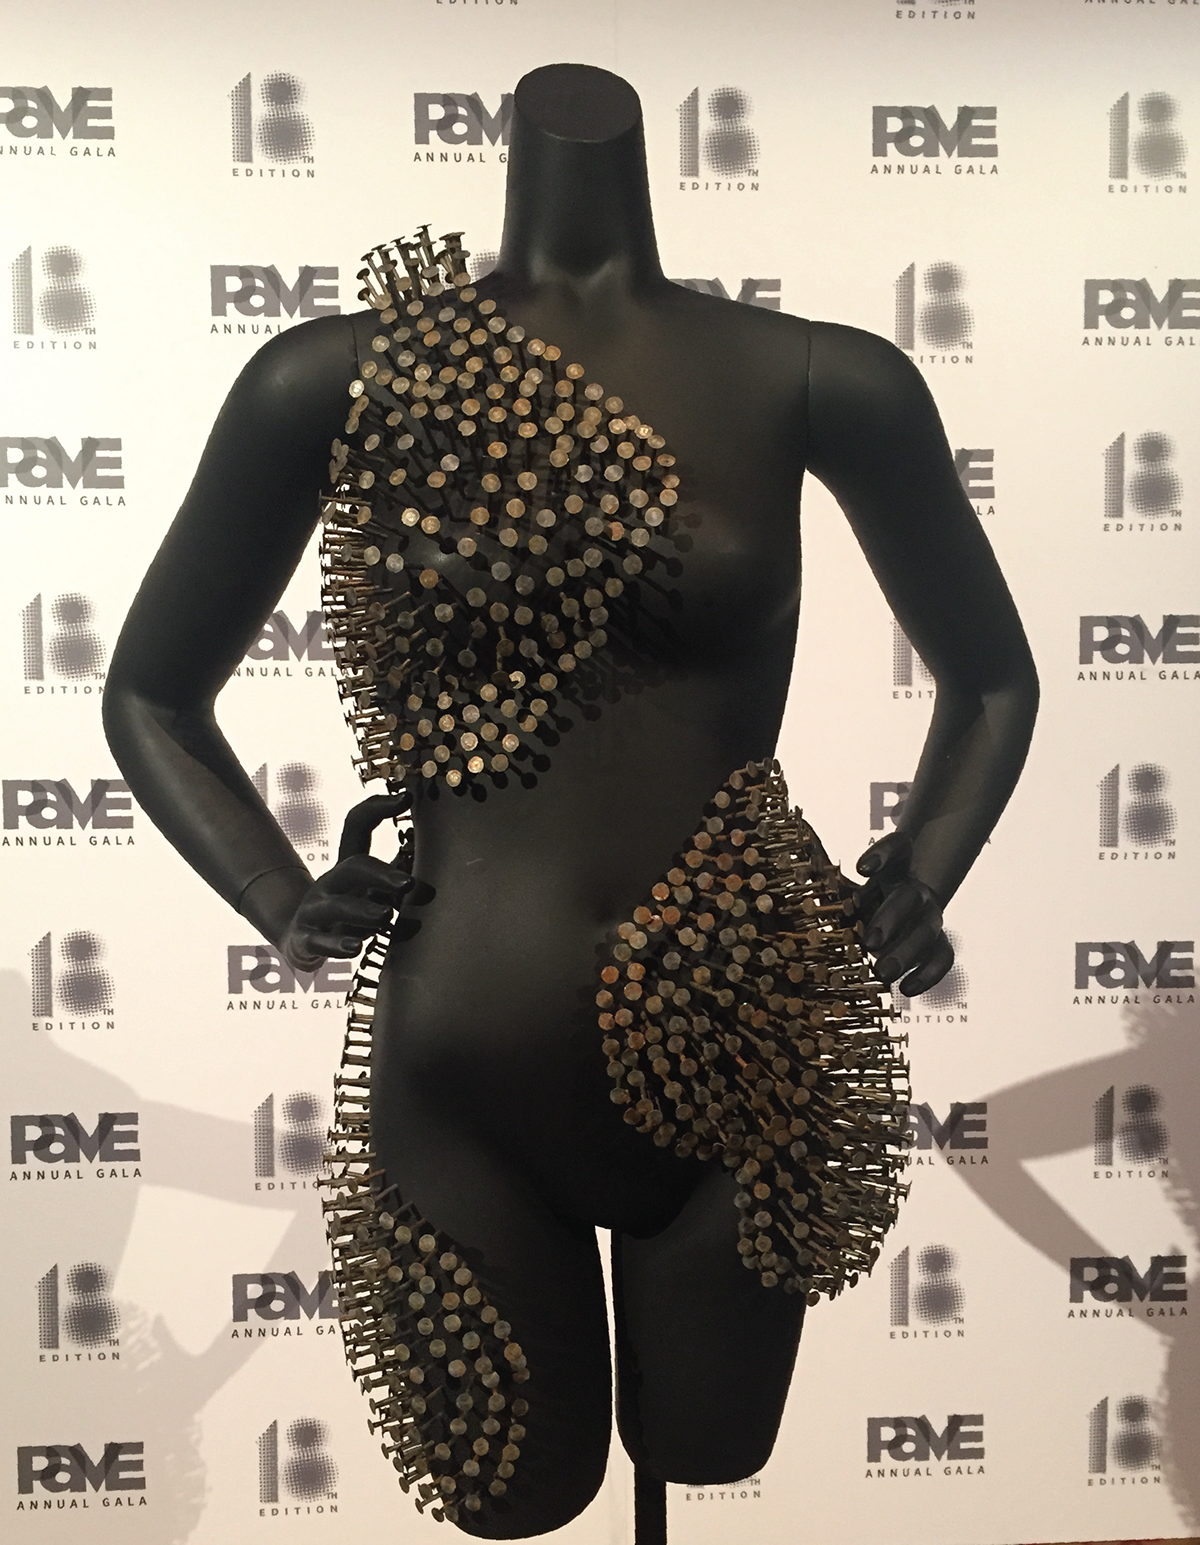 mannequin pave nails Gala sculpture dot matrix